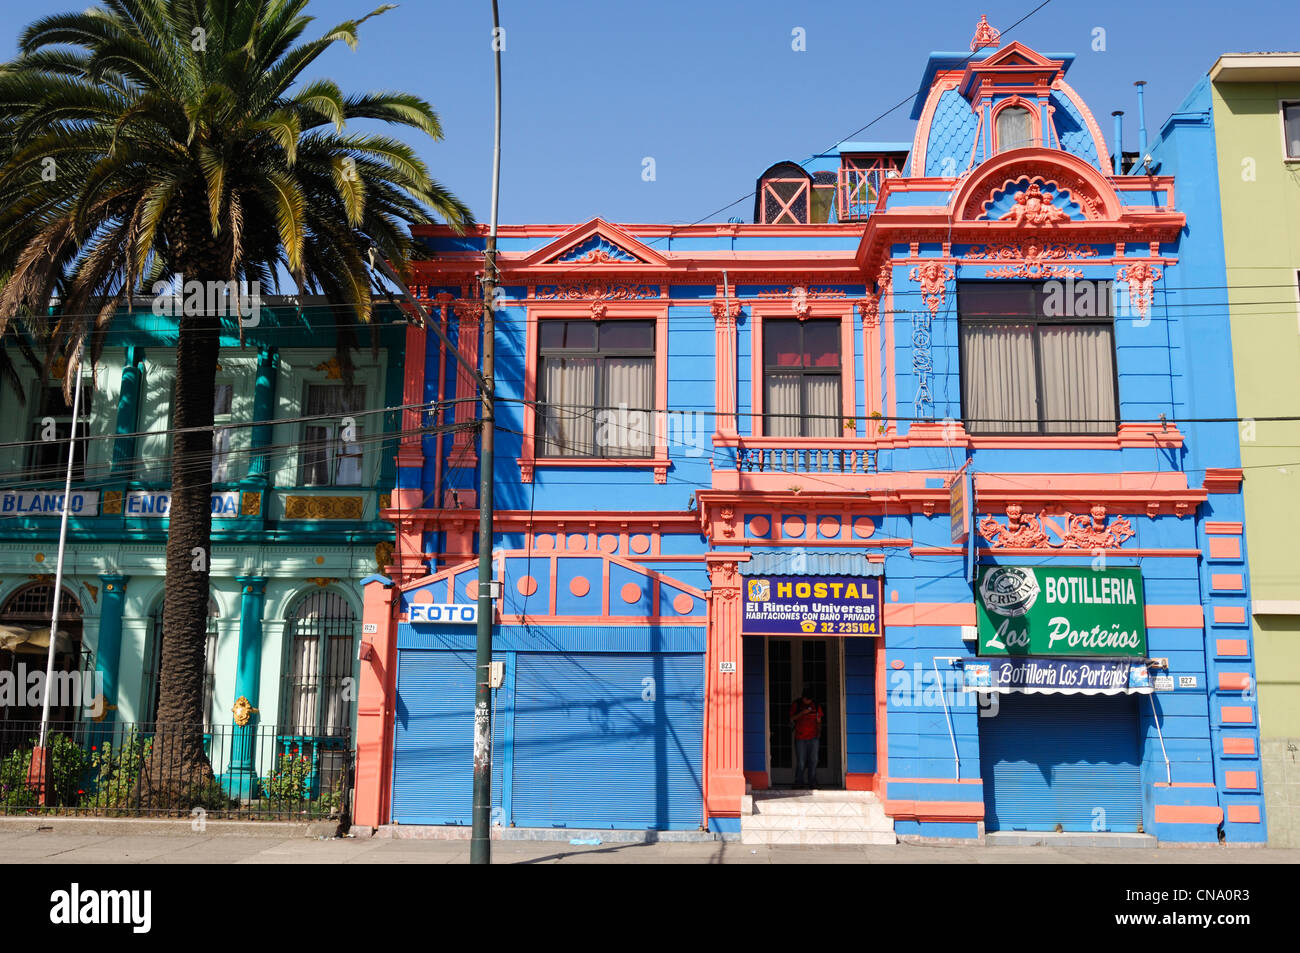 Chile, Valparaiso region, Valparaiso City, Hostal colored hotel dormitory for budget accommodation in Valparaiso Stock Photo